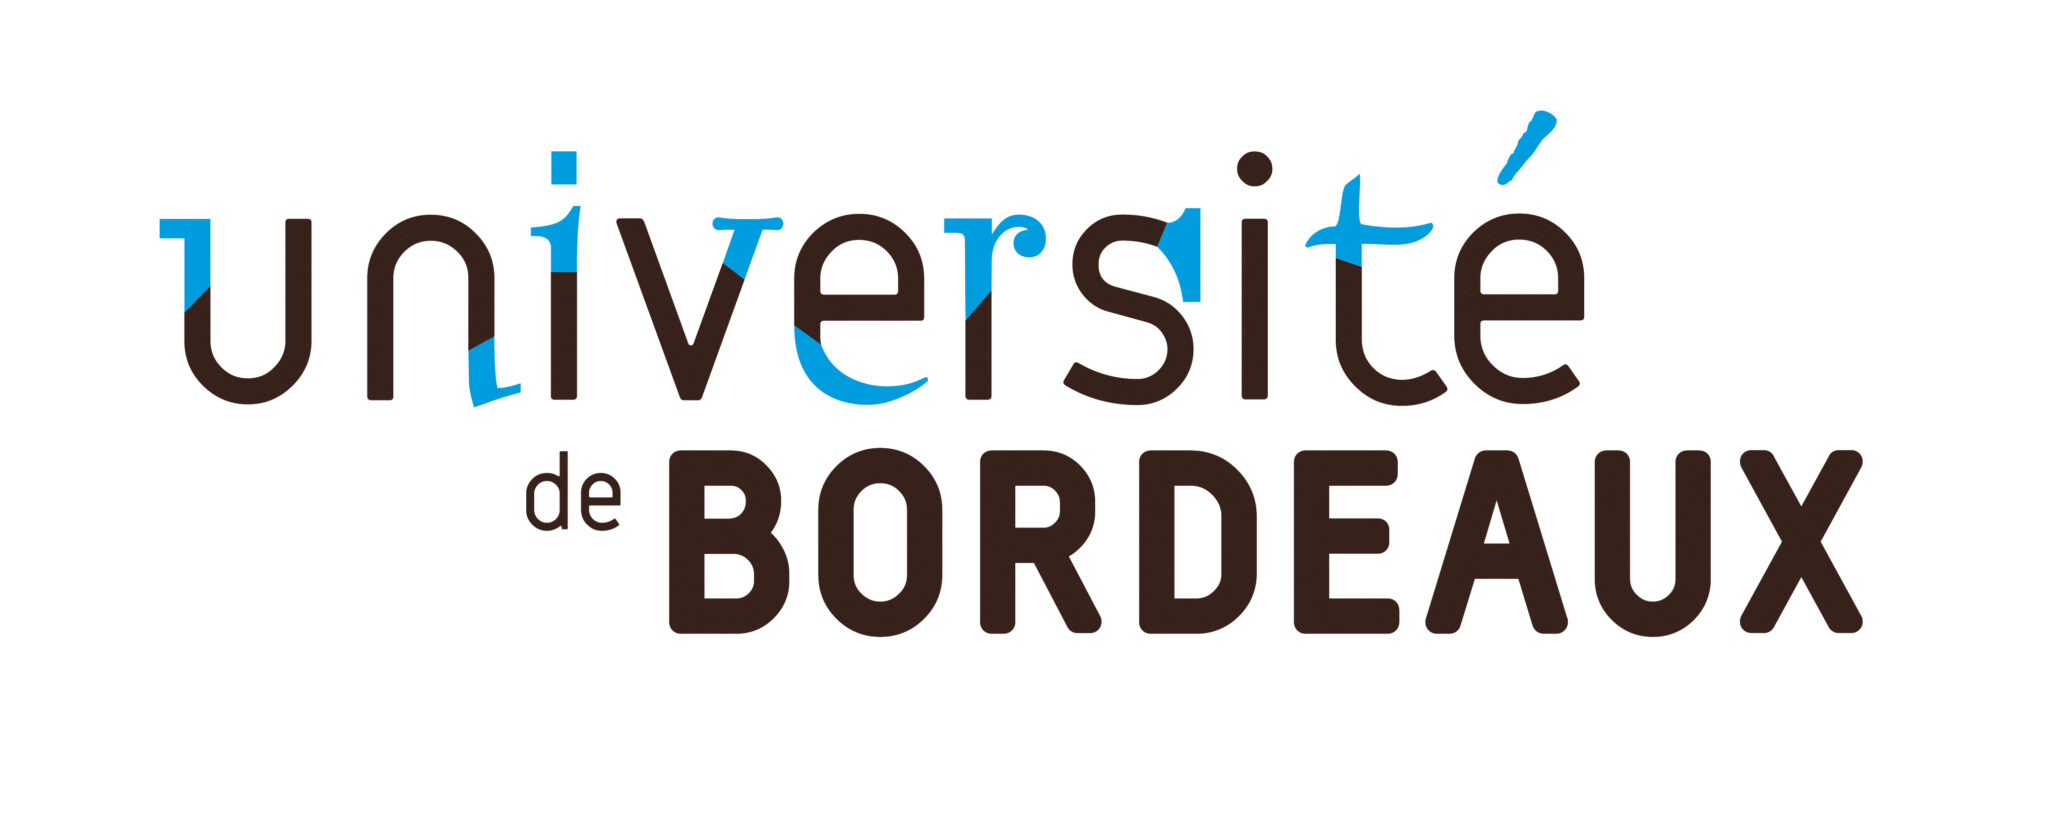 Universite-Bordeaux-RVB-01_HD